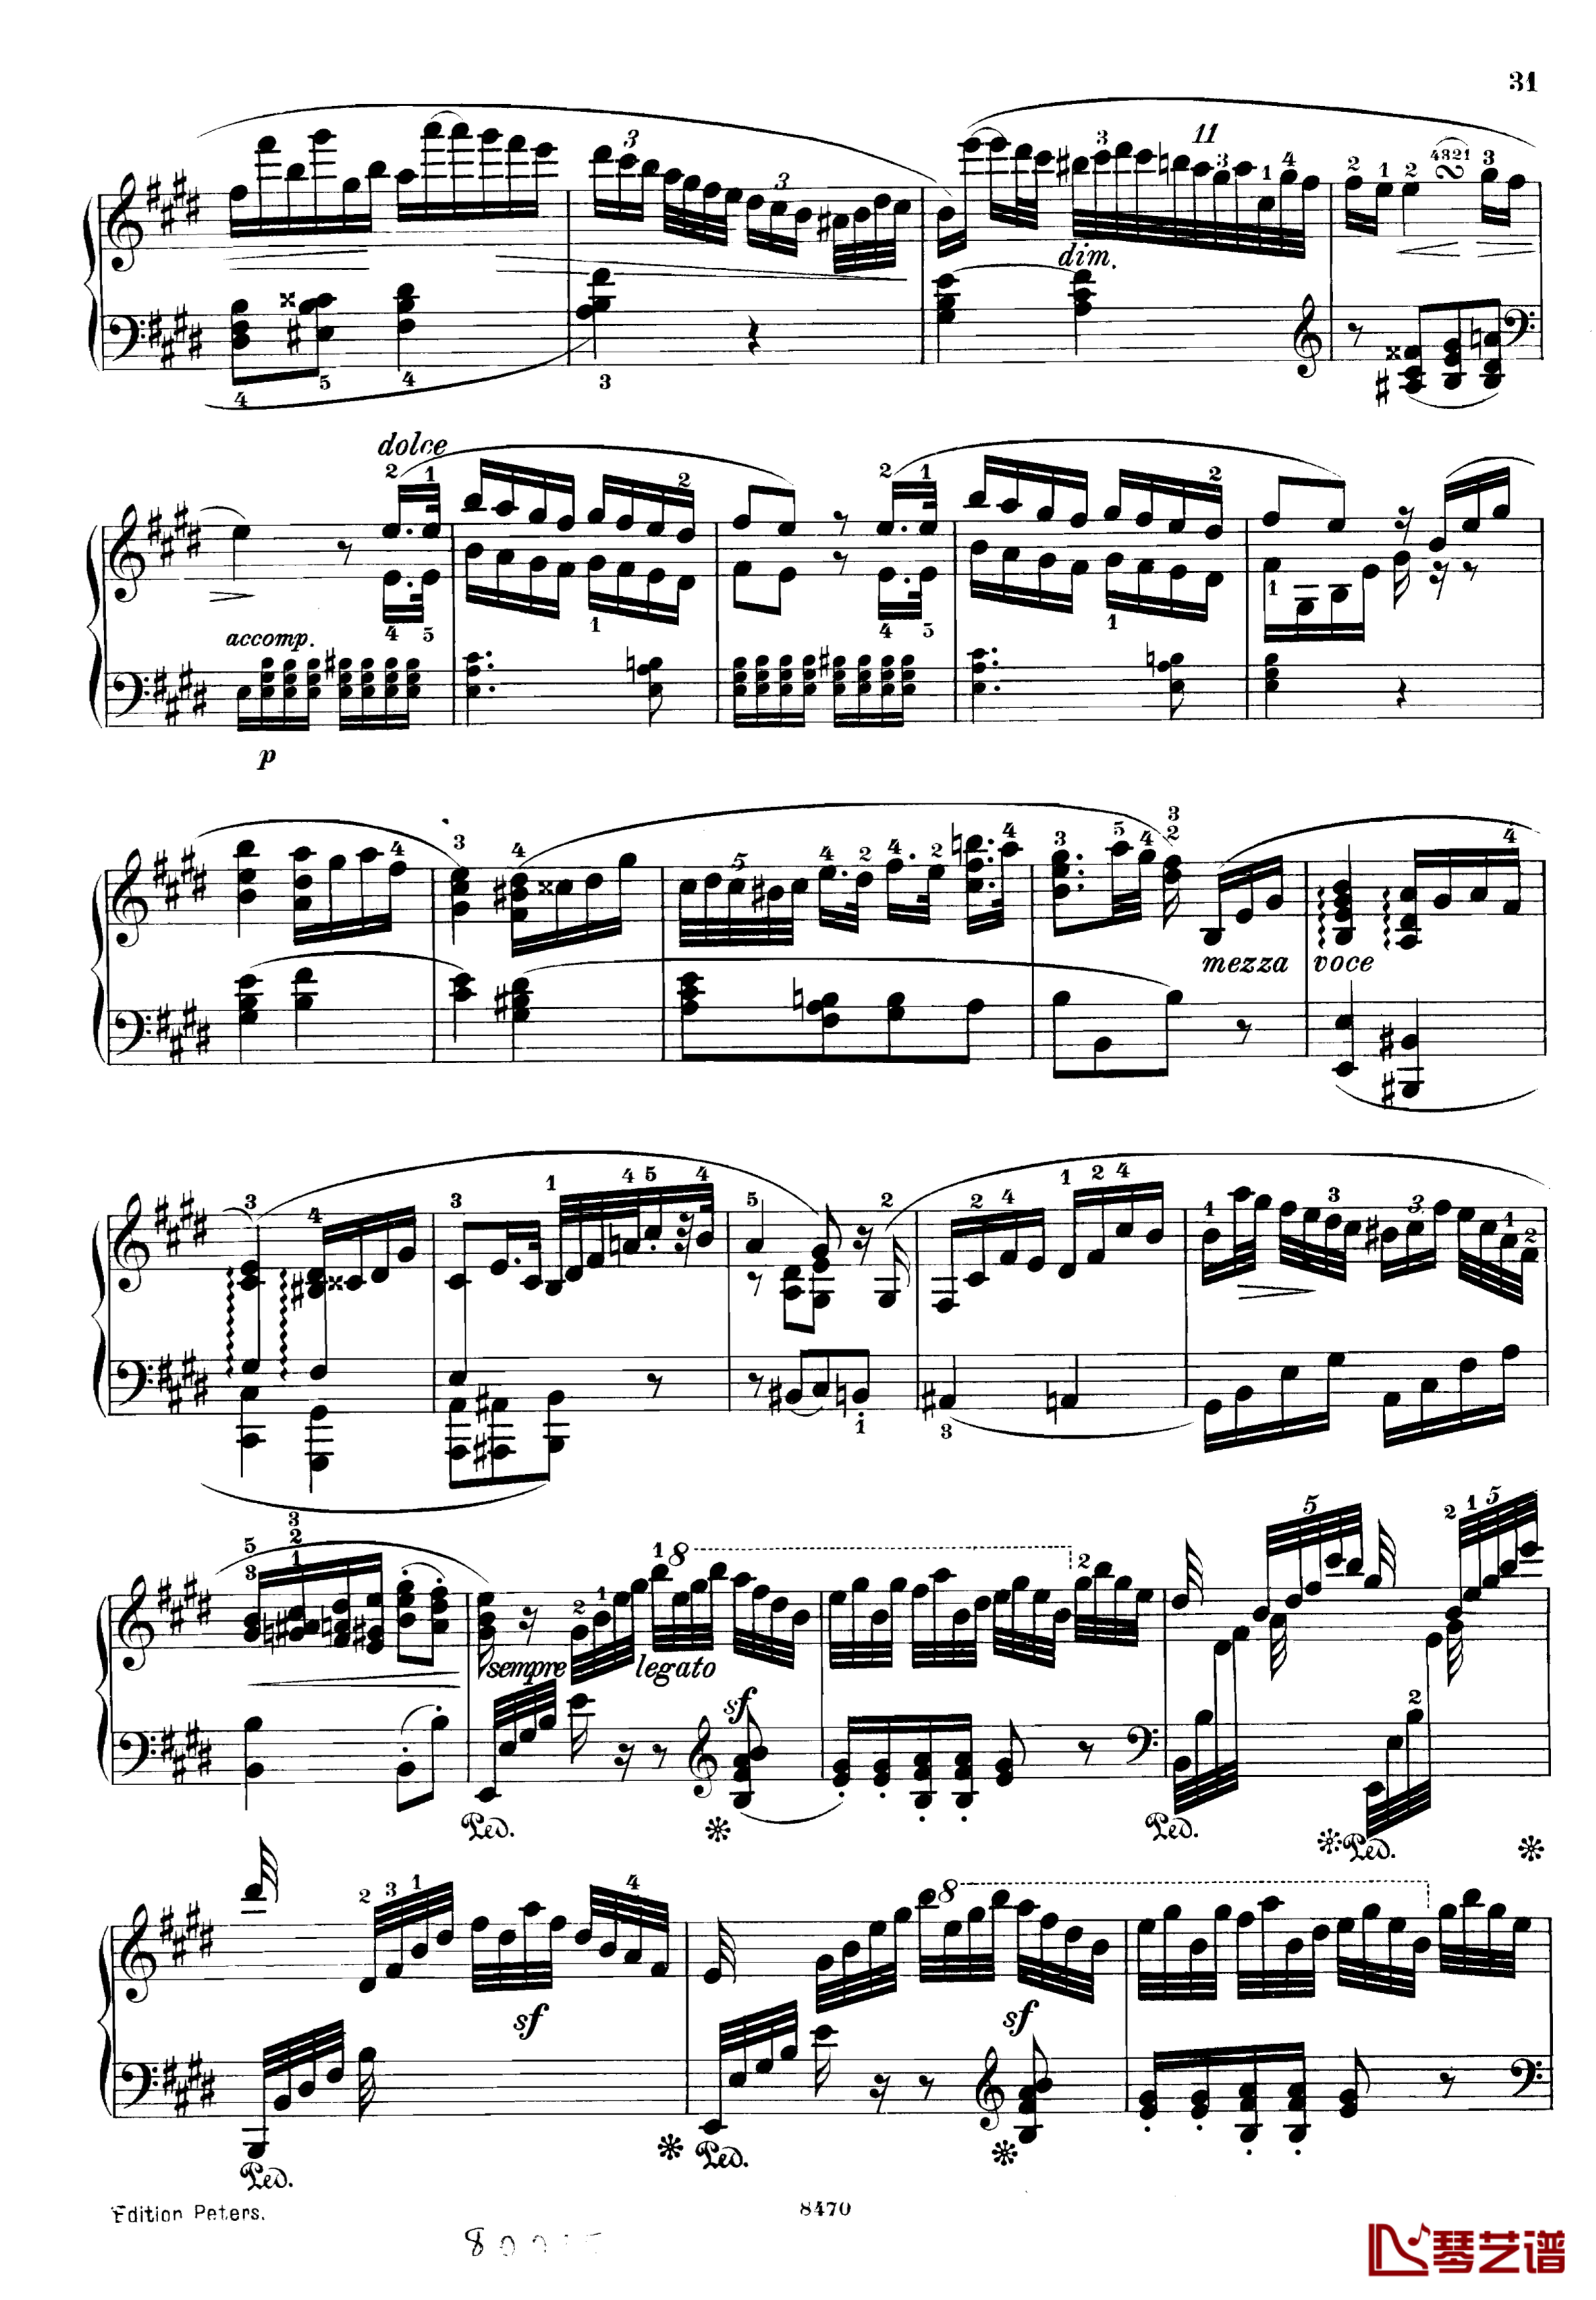 升c小调第三钢琴协奏曲Op.55钢琴谱-克里斯蒂安-里斯31